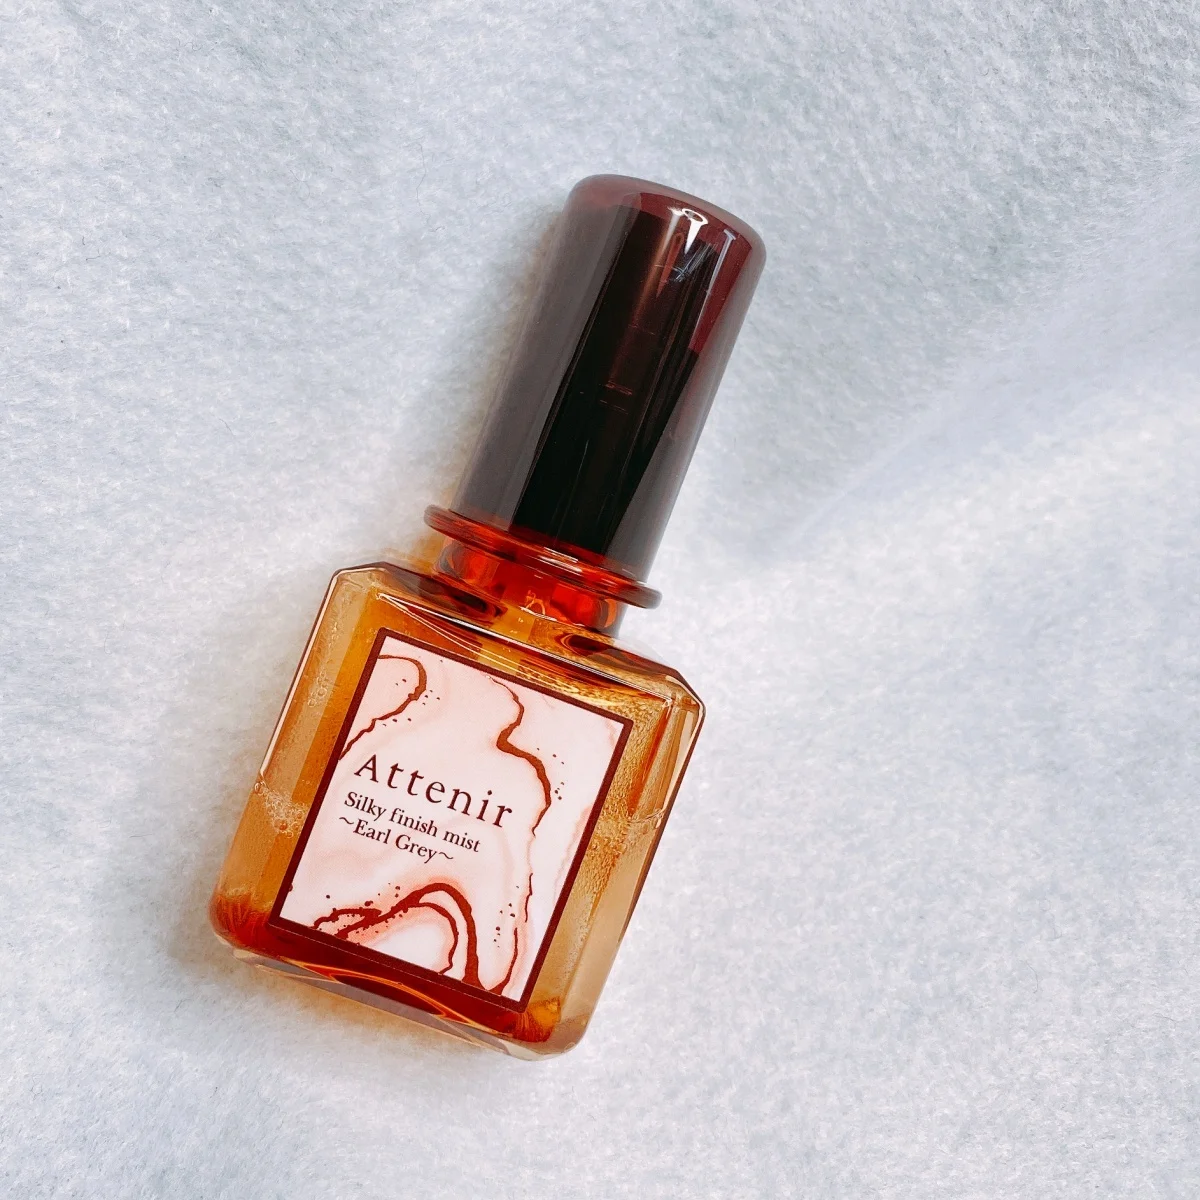 アテニアの2022年春限定新色のシルキーフィニッシュミストはアールグレイの香りに癒されるオイルインミスト